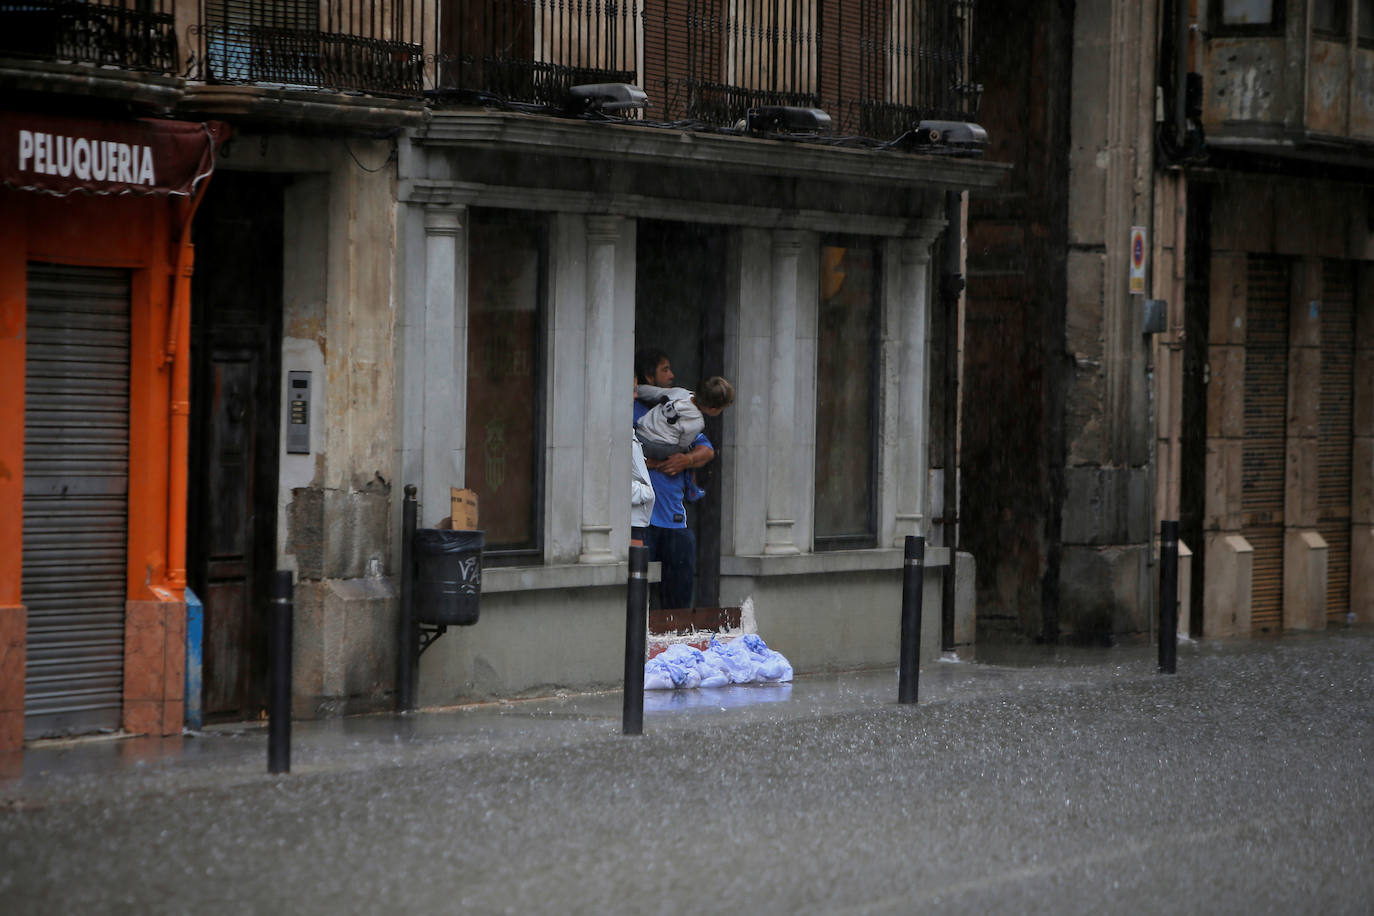 El temporal deja el tercer muerto, desborda el río Segura y azota todo el sureste. En la localidad valenciana de Onteniente, las lluvias por la gota fría ya acumulan más de trescientos litros por metro cuadrado, su máximo de lluvias desde 1917